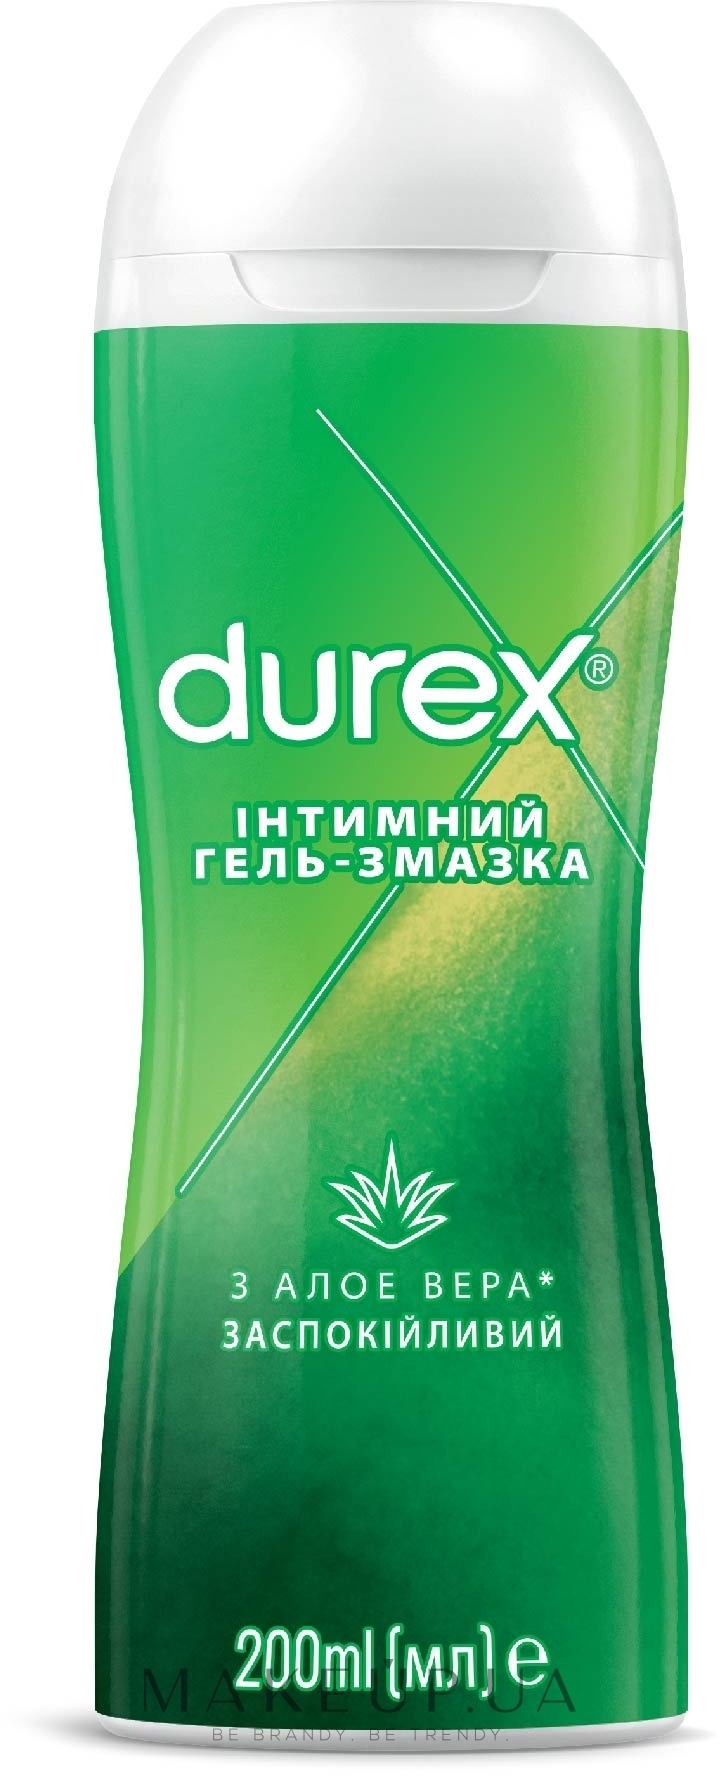 Интимные гели и смазки - купить в официальном интернет-магазине | Durex Россия